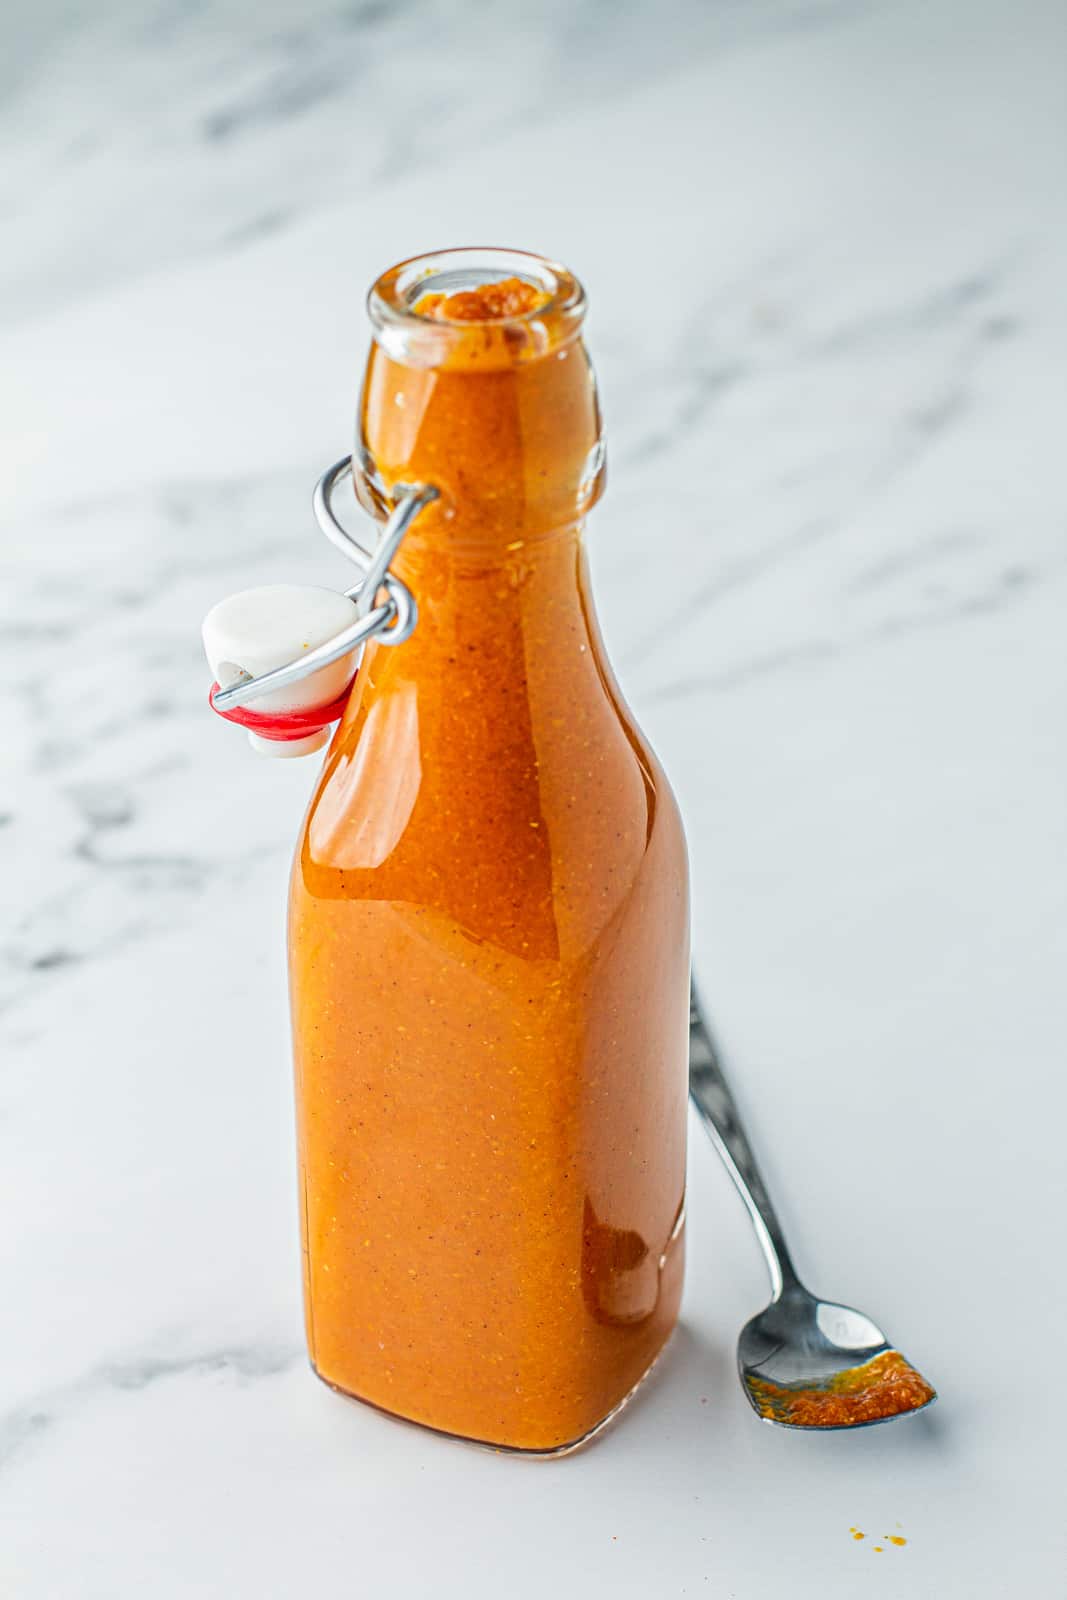 Mango habanero sauce bottled and cooling